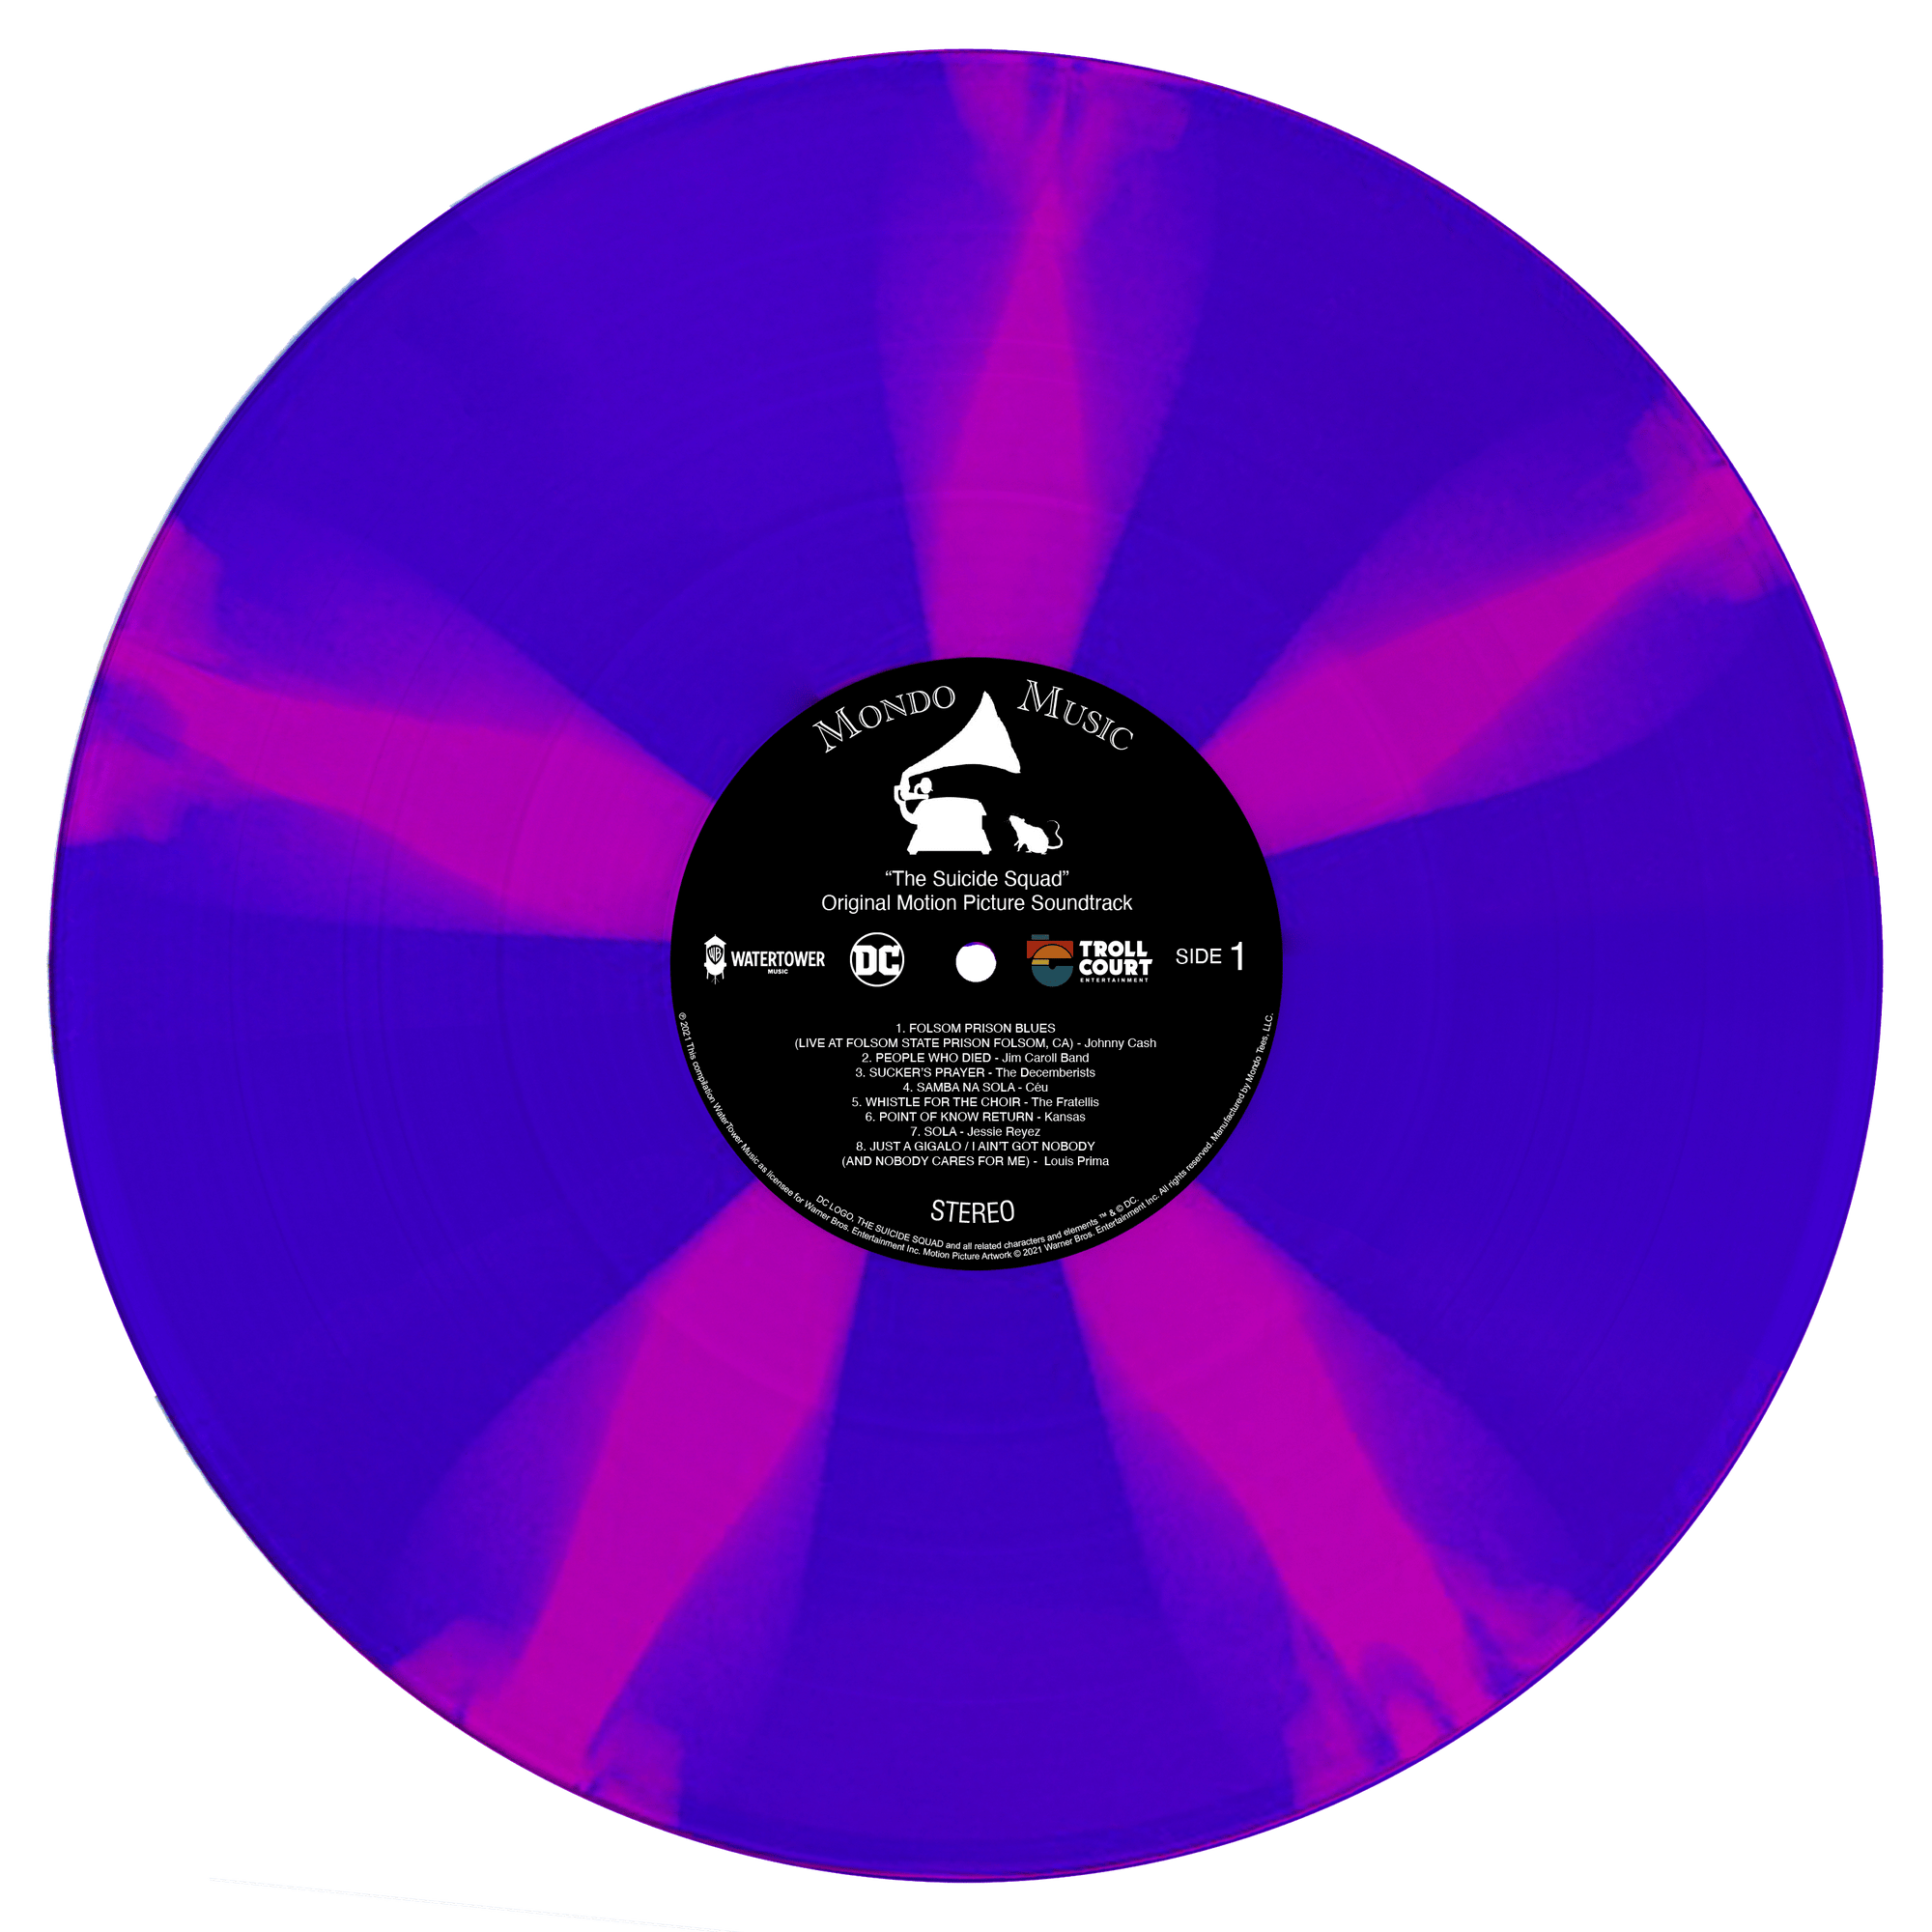 Louis Prima LP Vinyl Records for sale